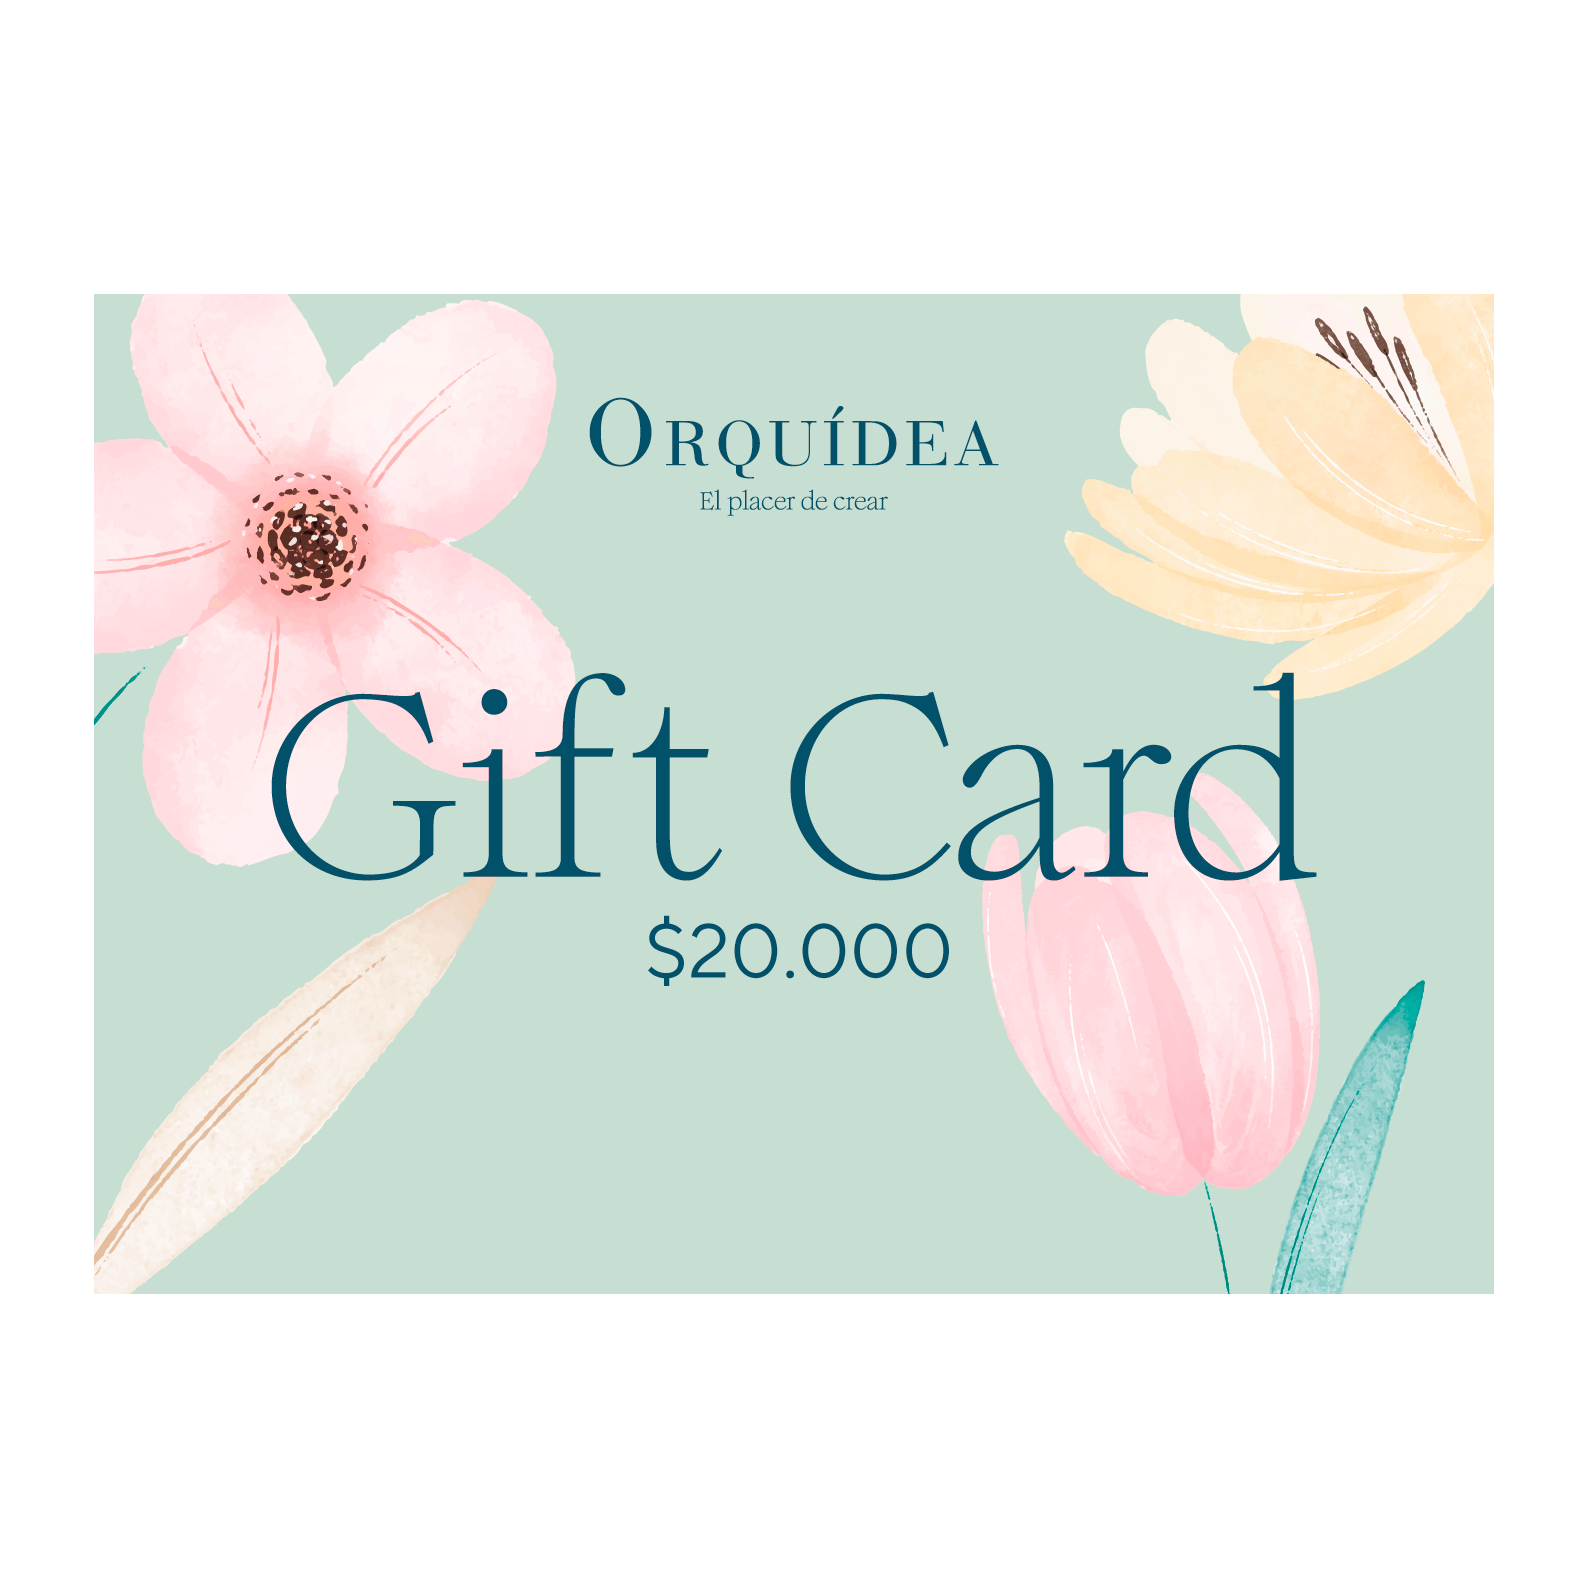 Gift Card Orquídea